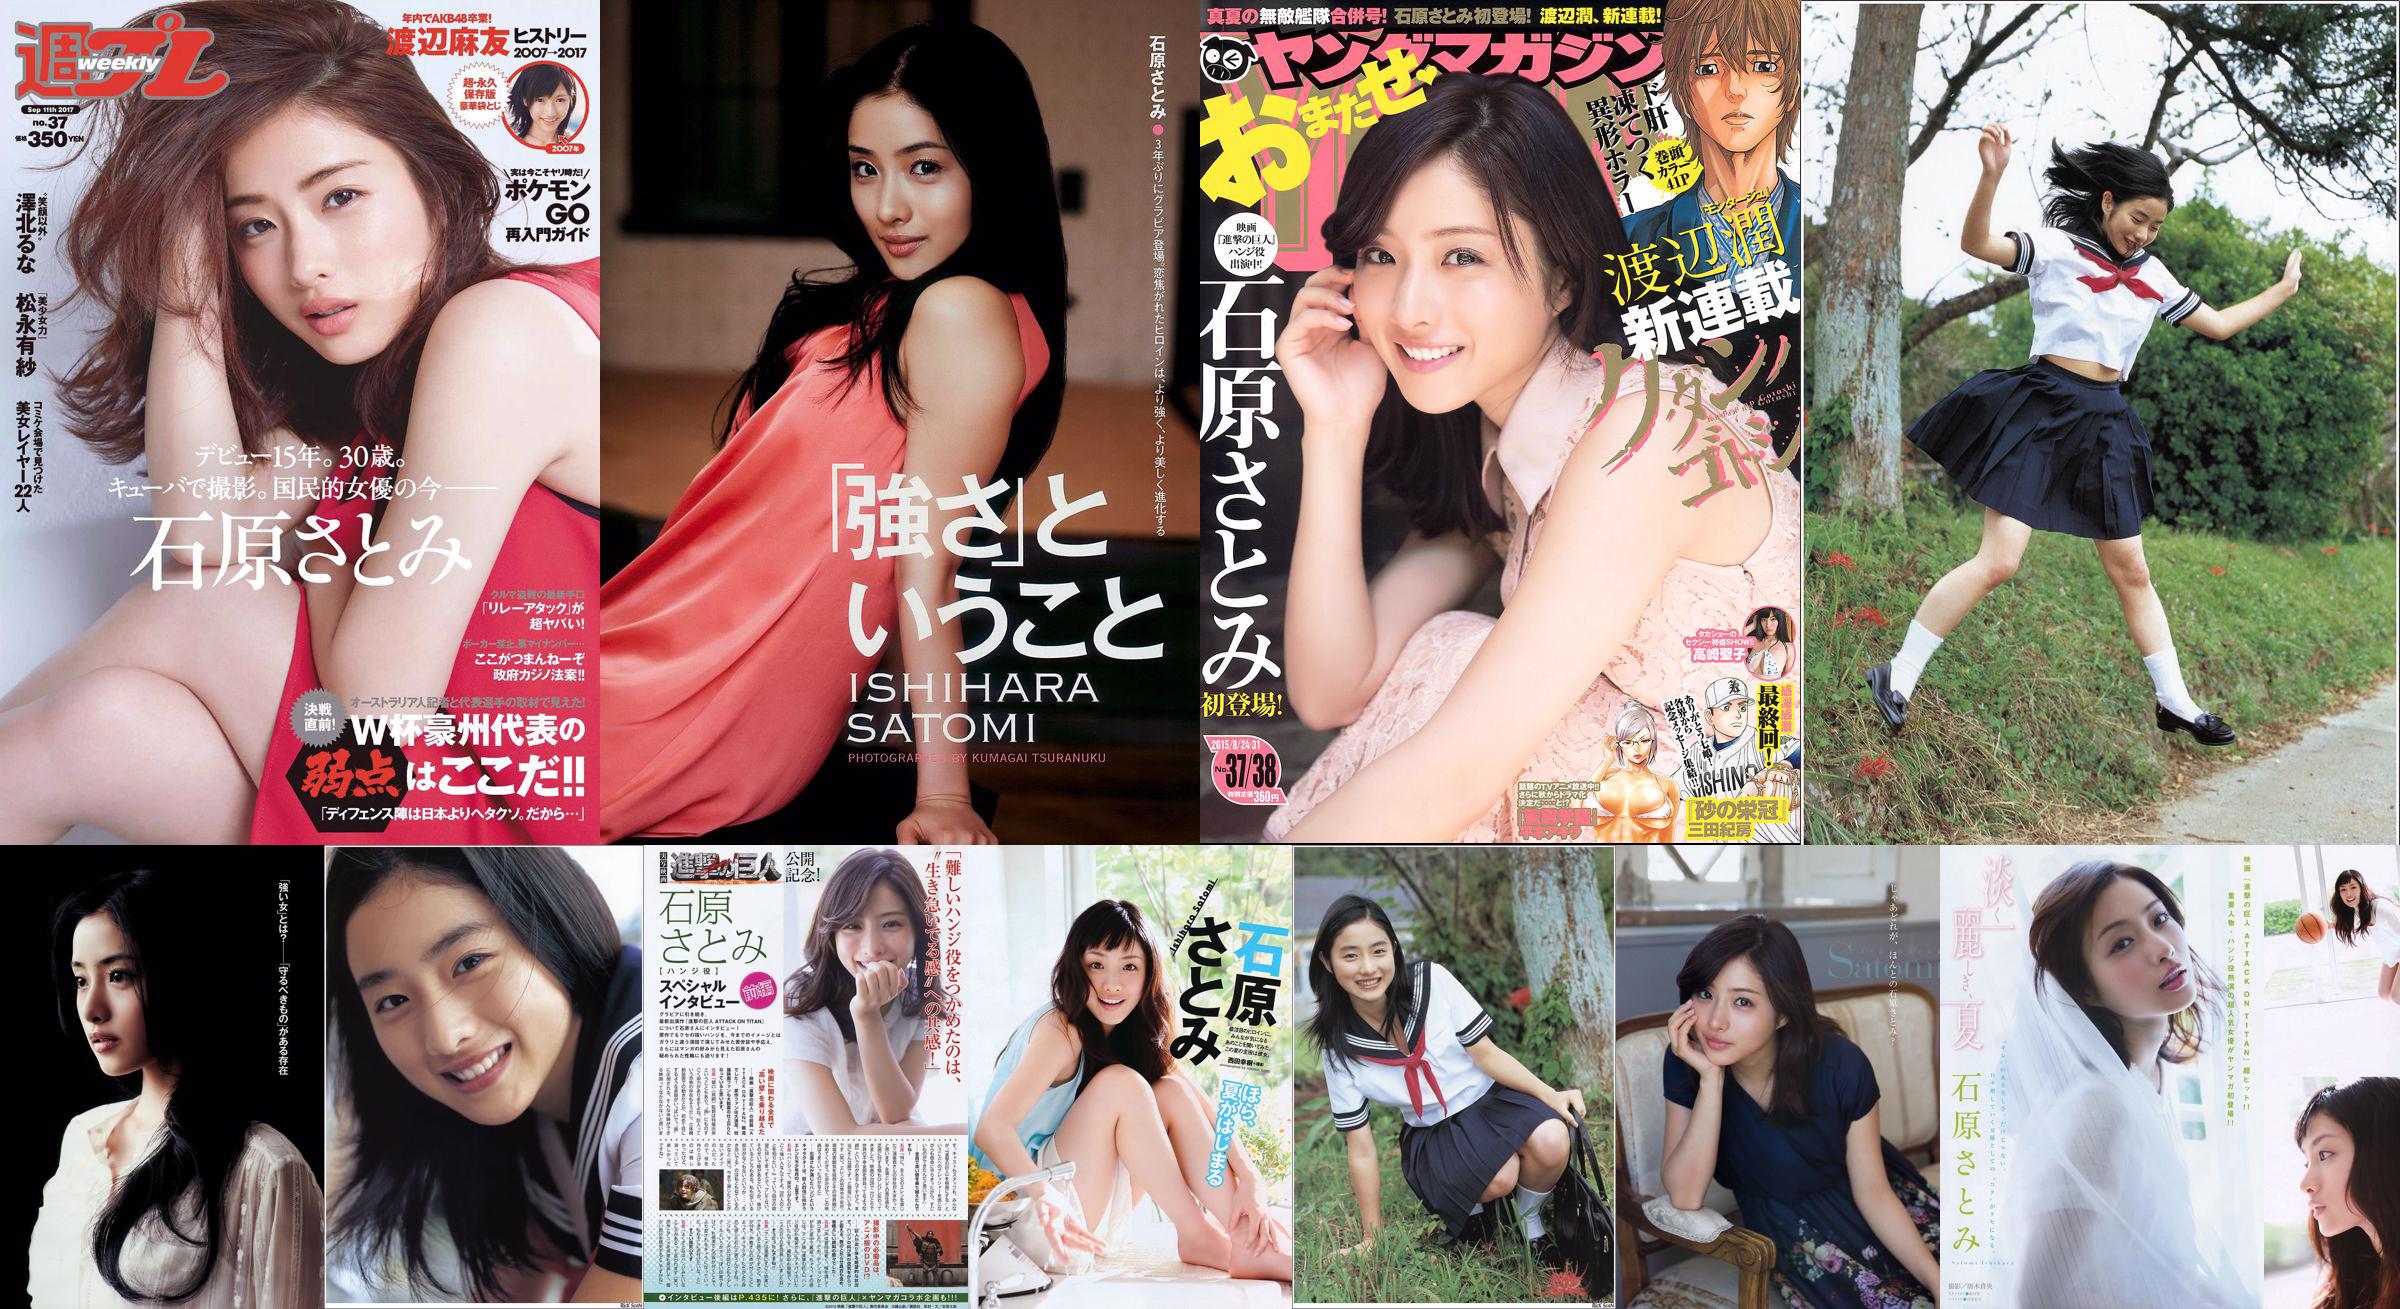 [Young Magazine] Ishihara さとみ Takasaki Seiko 2015 No.37-38 Photo Magazine No.5b8704 Seite 5